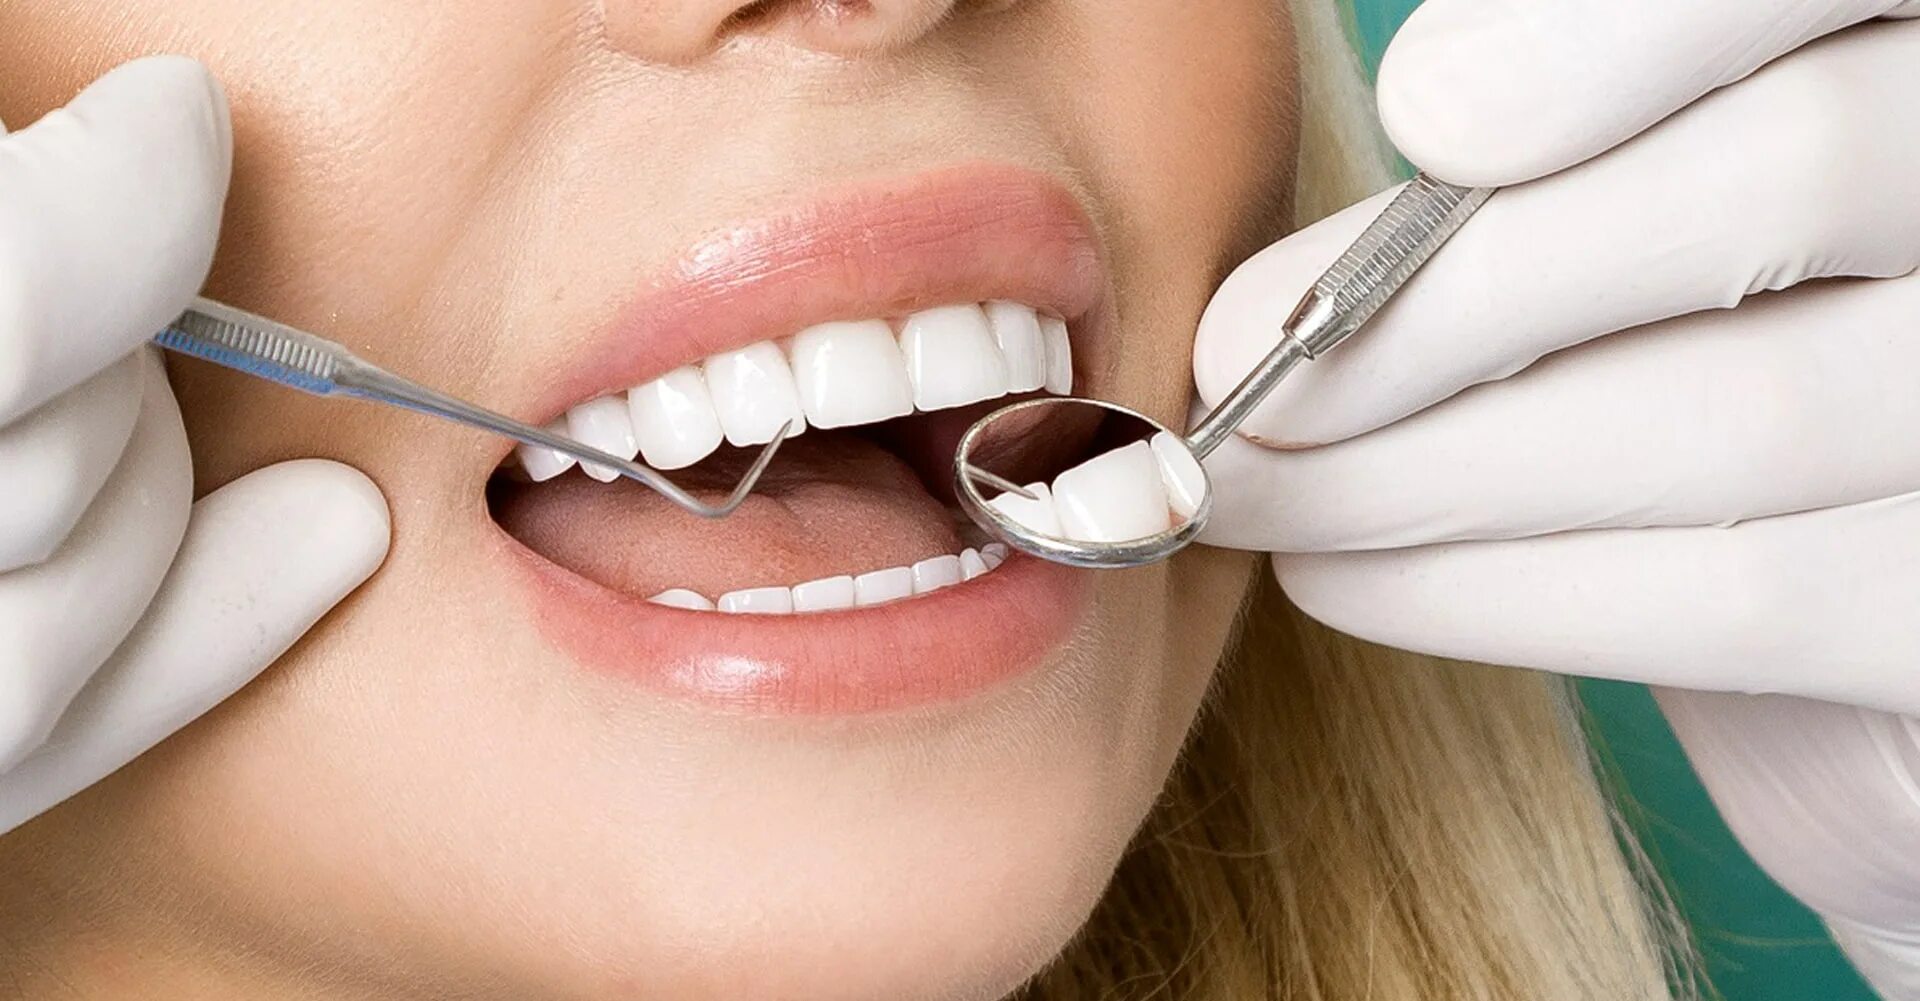 Зубы стоматология. Терапия стоматология. Эстетическая стоматология. Профессиональная гигиена полости рта.